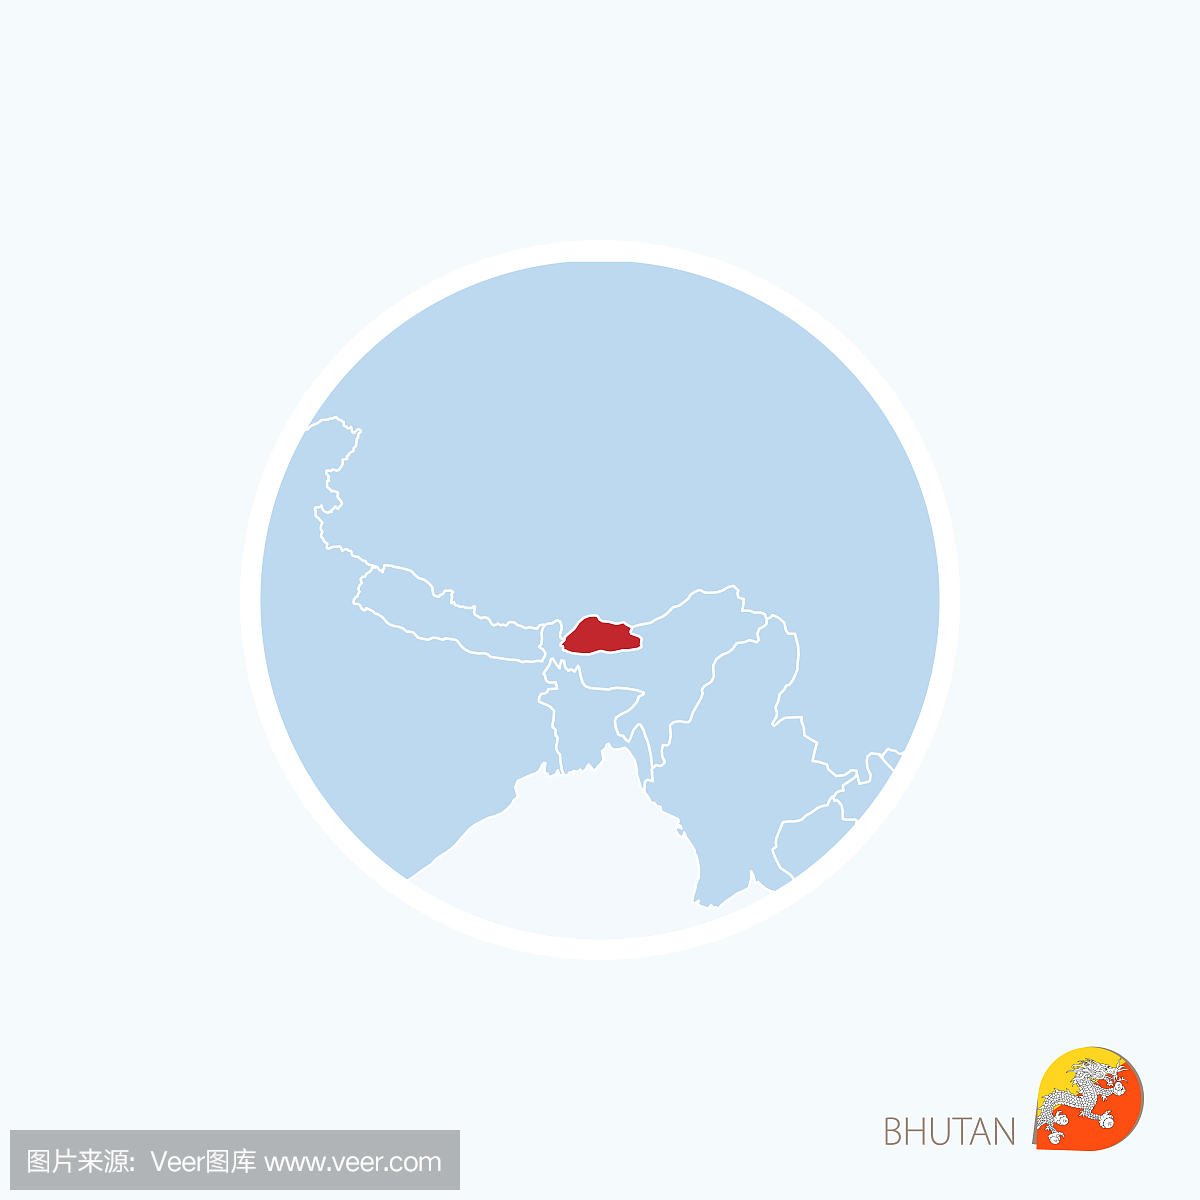 不丹的地图图标。南亚的蓝色地图与突出显示不